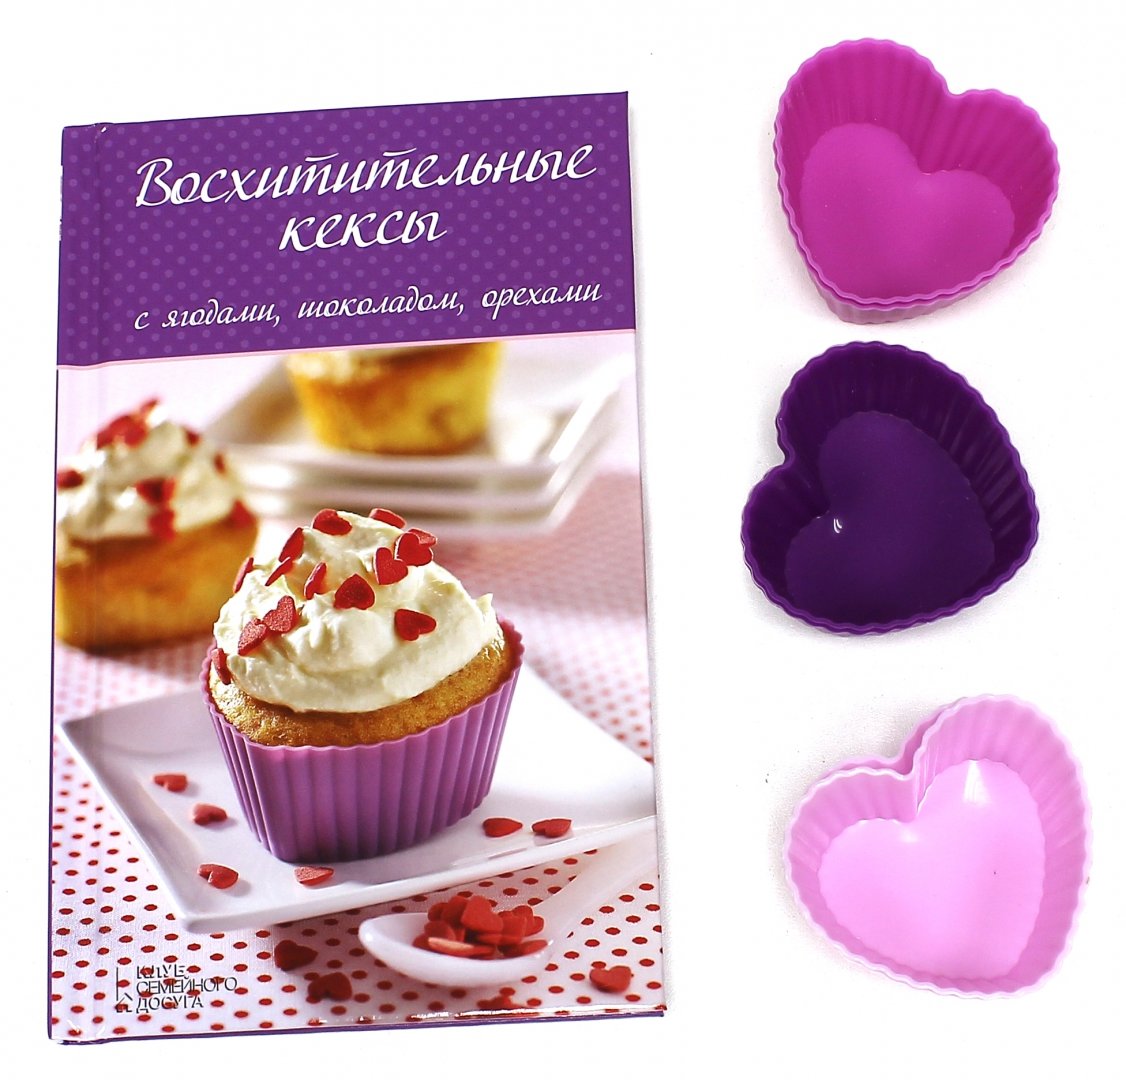 Иллюстрация 2 из 3 для Восхитительные кексы с ягодами, шоколадом, орехами (+ 6 форм) | Лабиринт - книги. Источник: Лабиринт